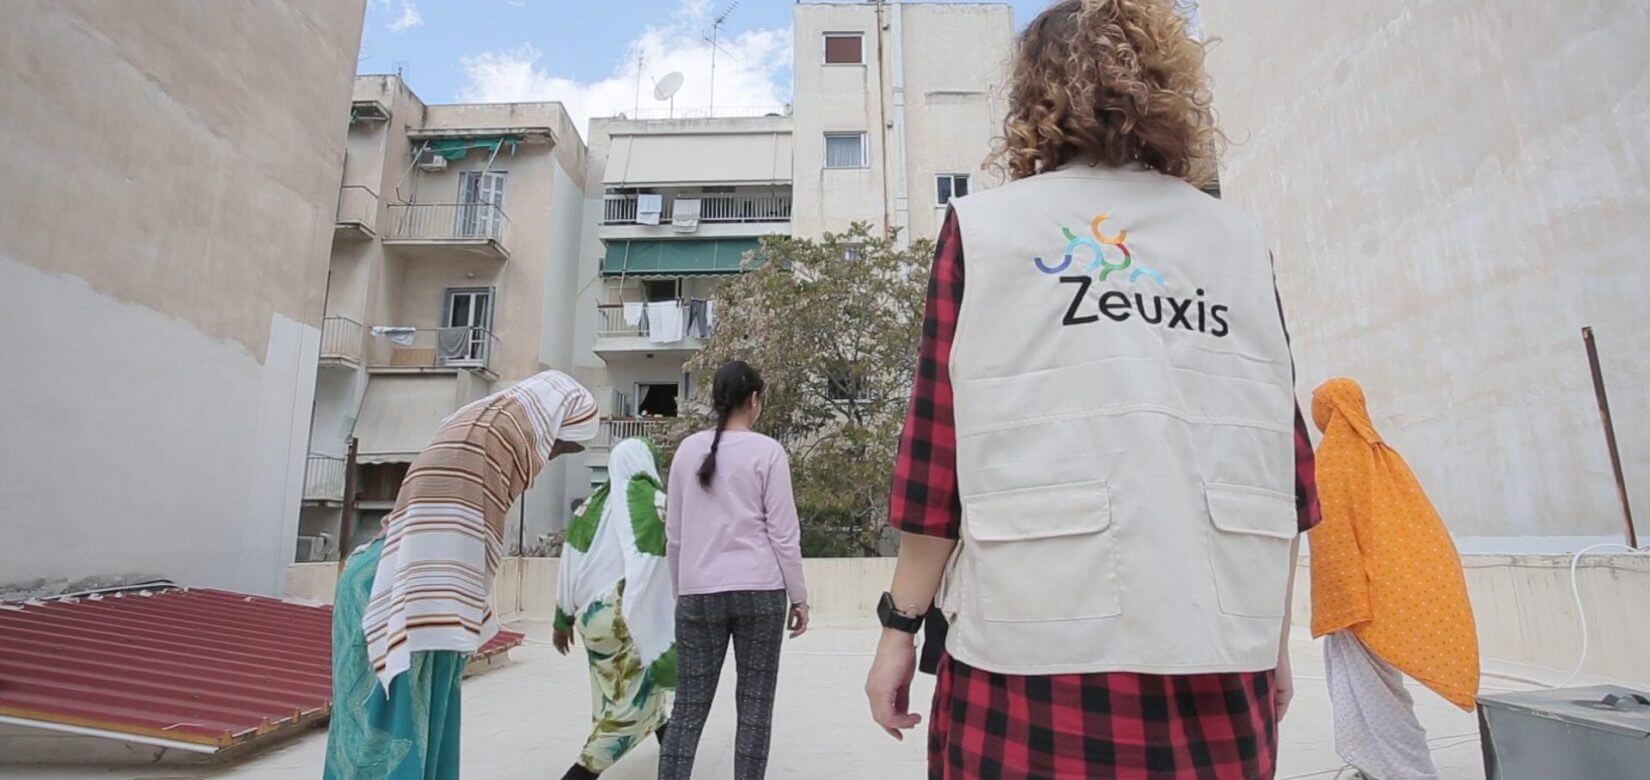 Τα κορίτσια του ξενώνα της ΜΚΟ Zeuxis "έμειναν σπίτι" με δημιουργικές δραστηριότητες & κανόνες υγιεινής